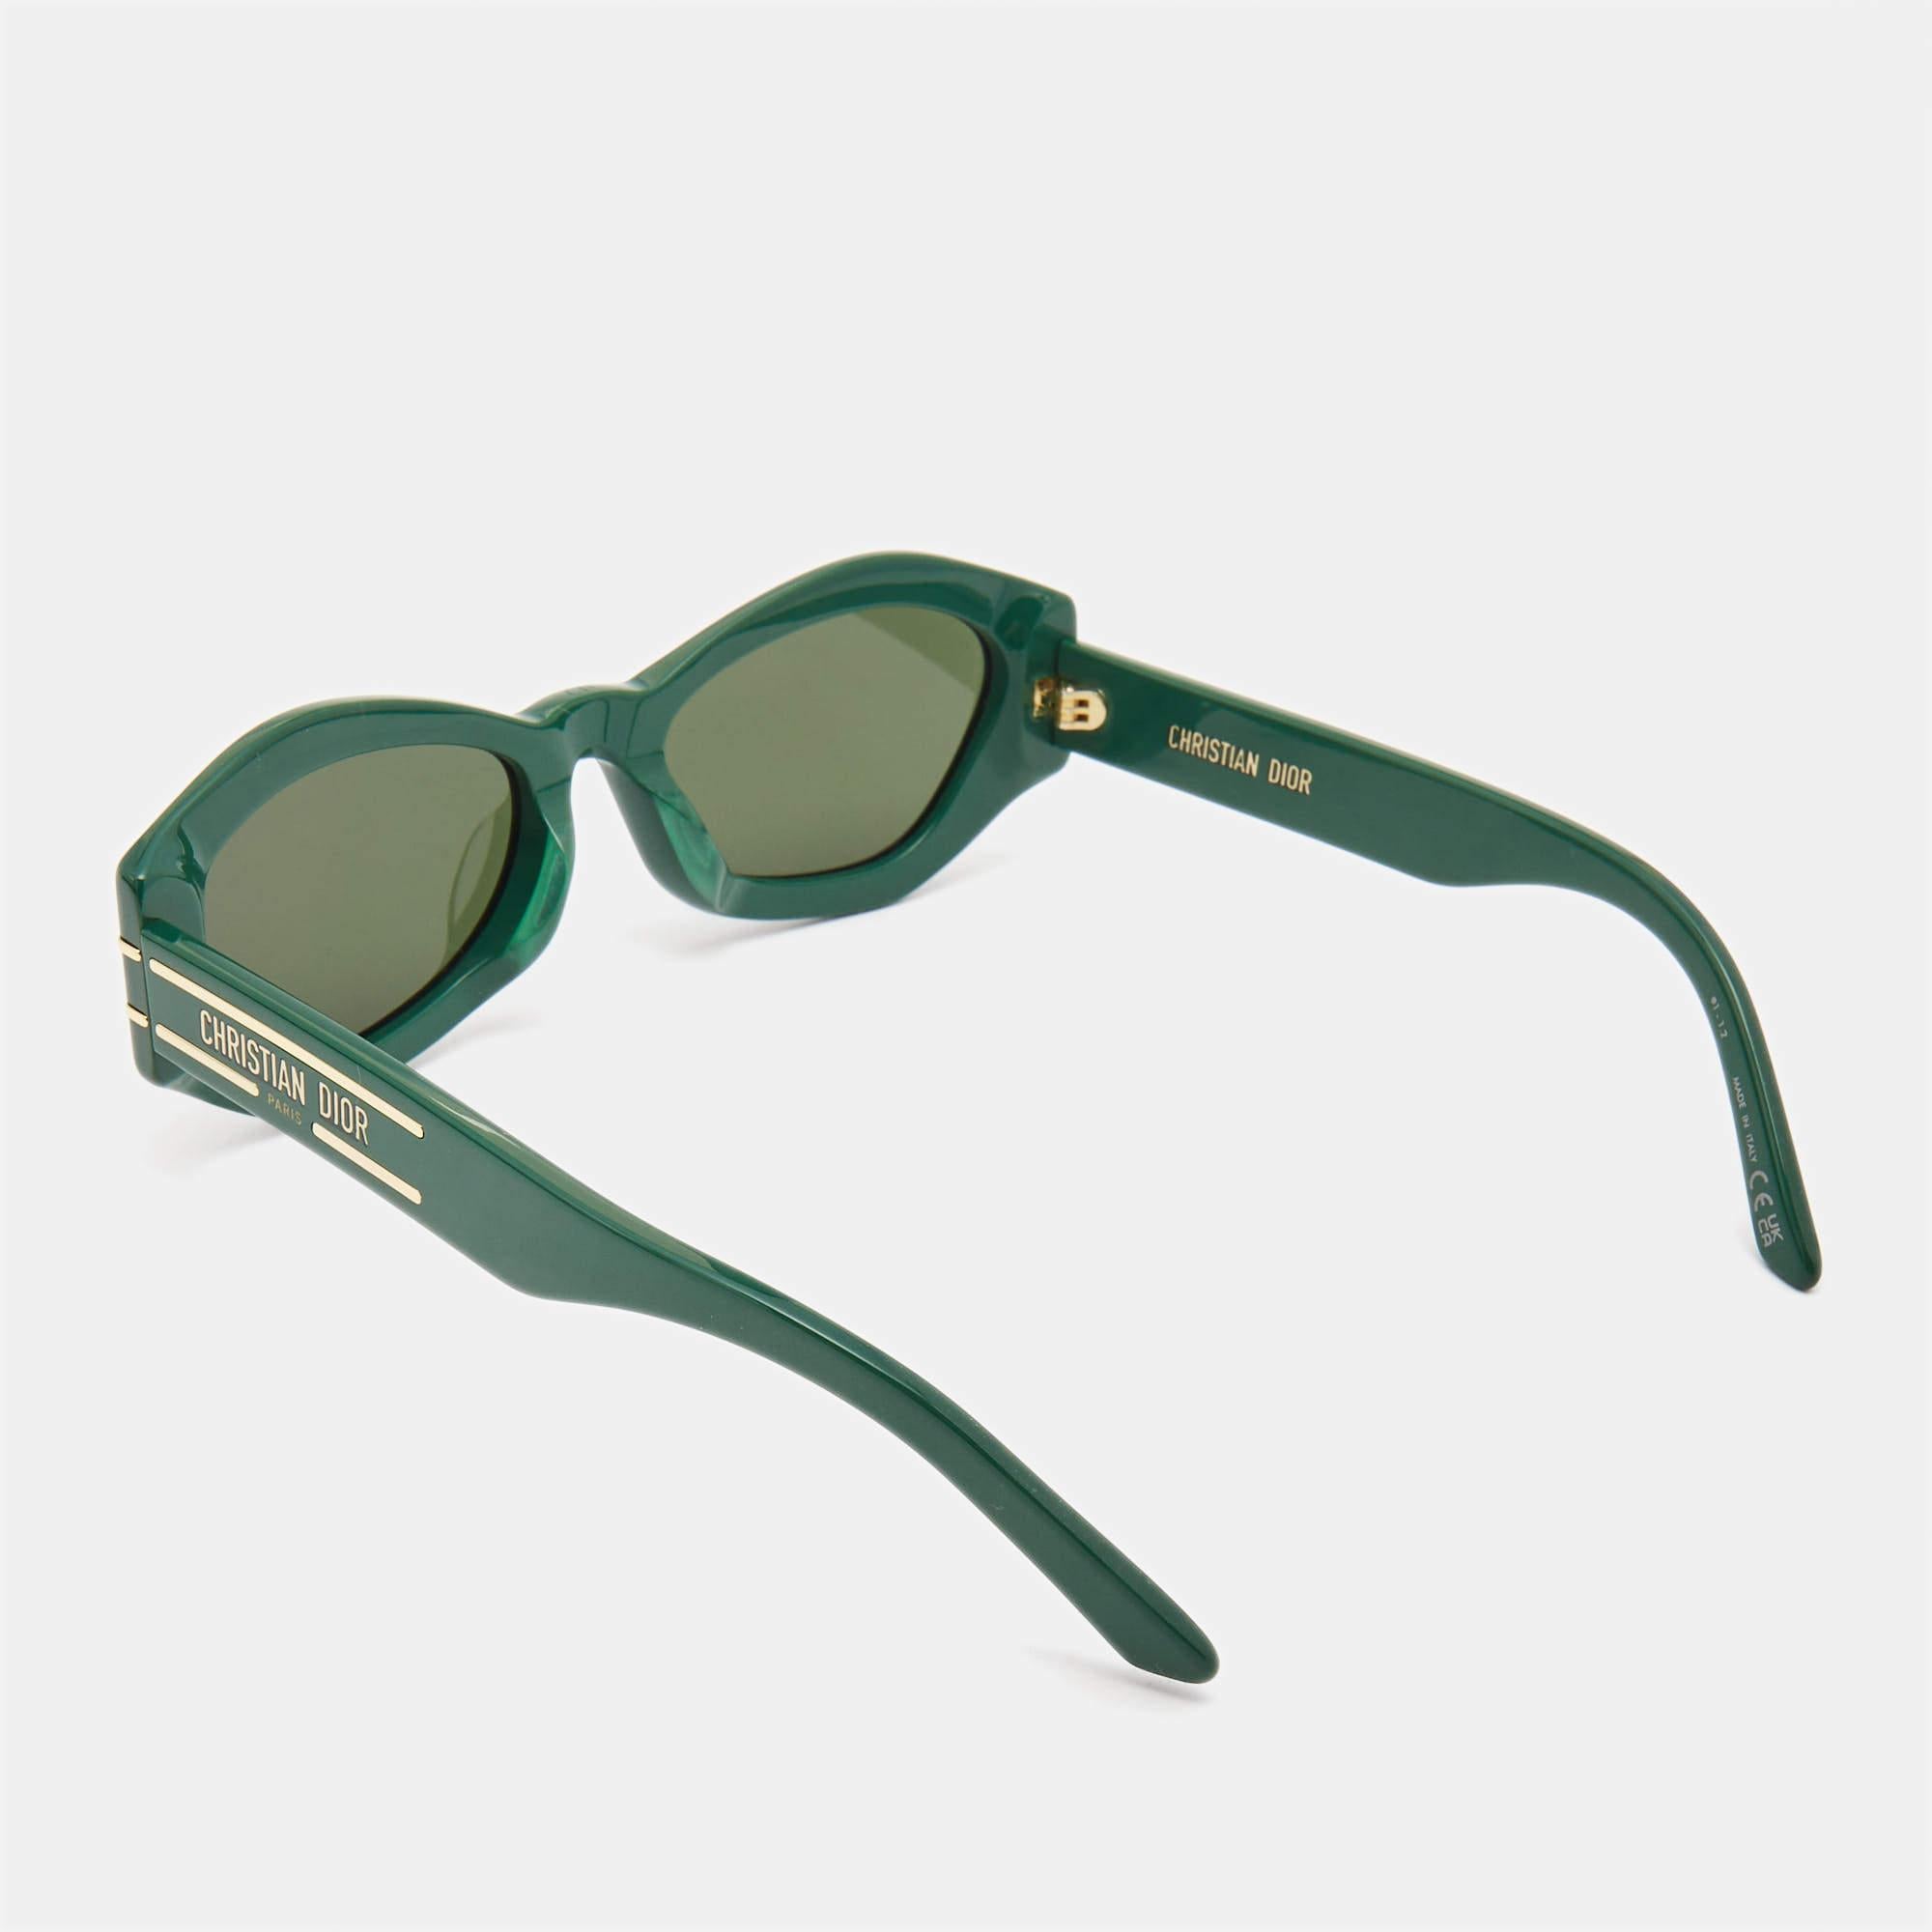 Laissez vos accessoires vous aider à affirmer votre style. Choisissez des créations telles que ces lunettes de soleil élégantes de Dior. Dotée d'une monture flatteuse, cette paire est un achat dont vous ne voudrez plus vous séparer.

Comprend : Étui